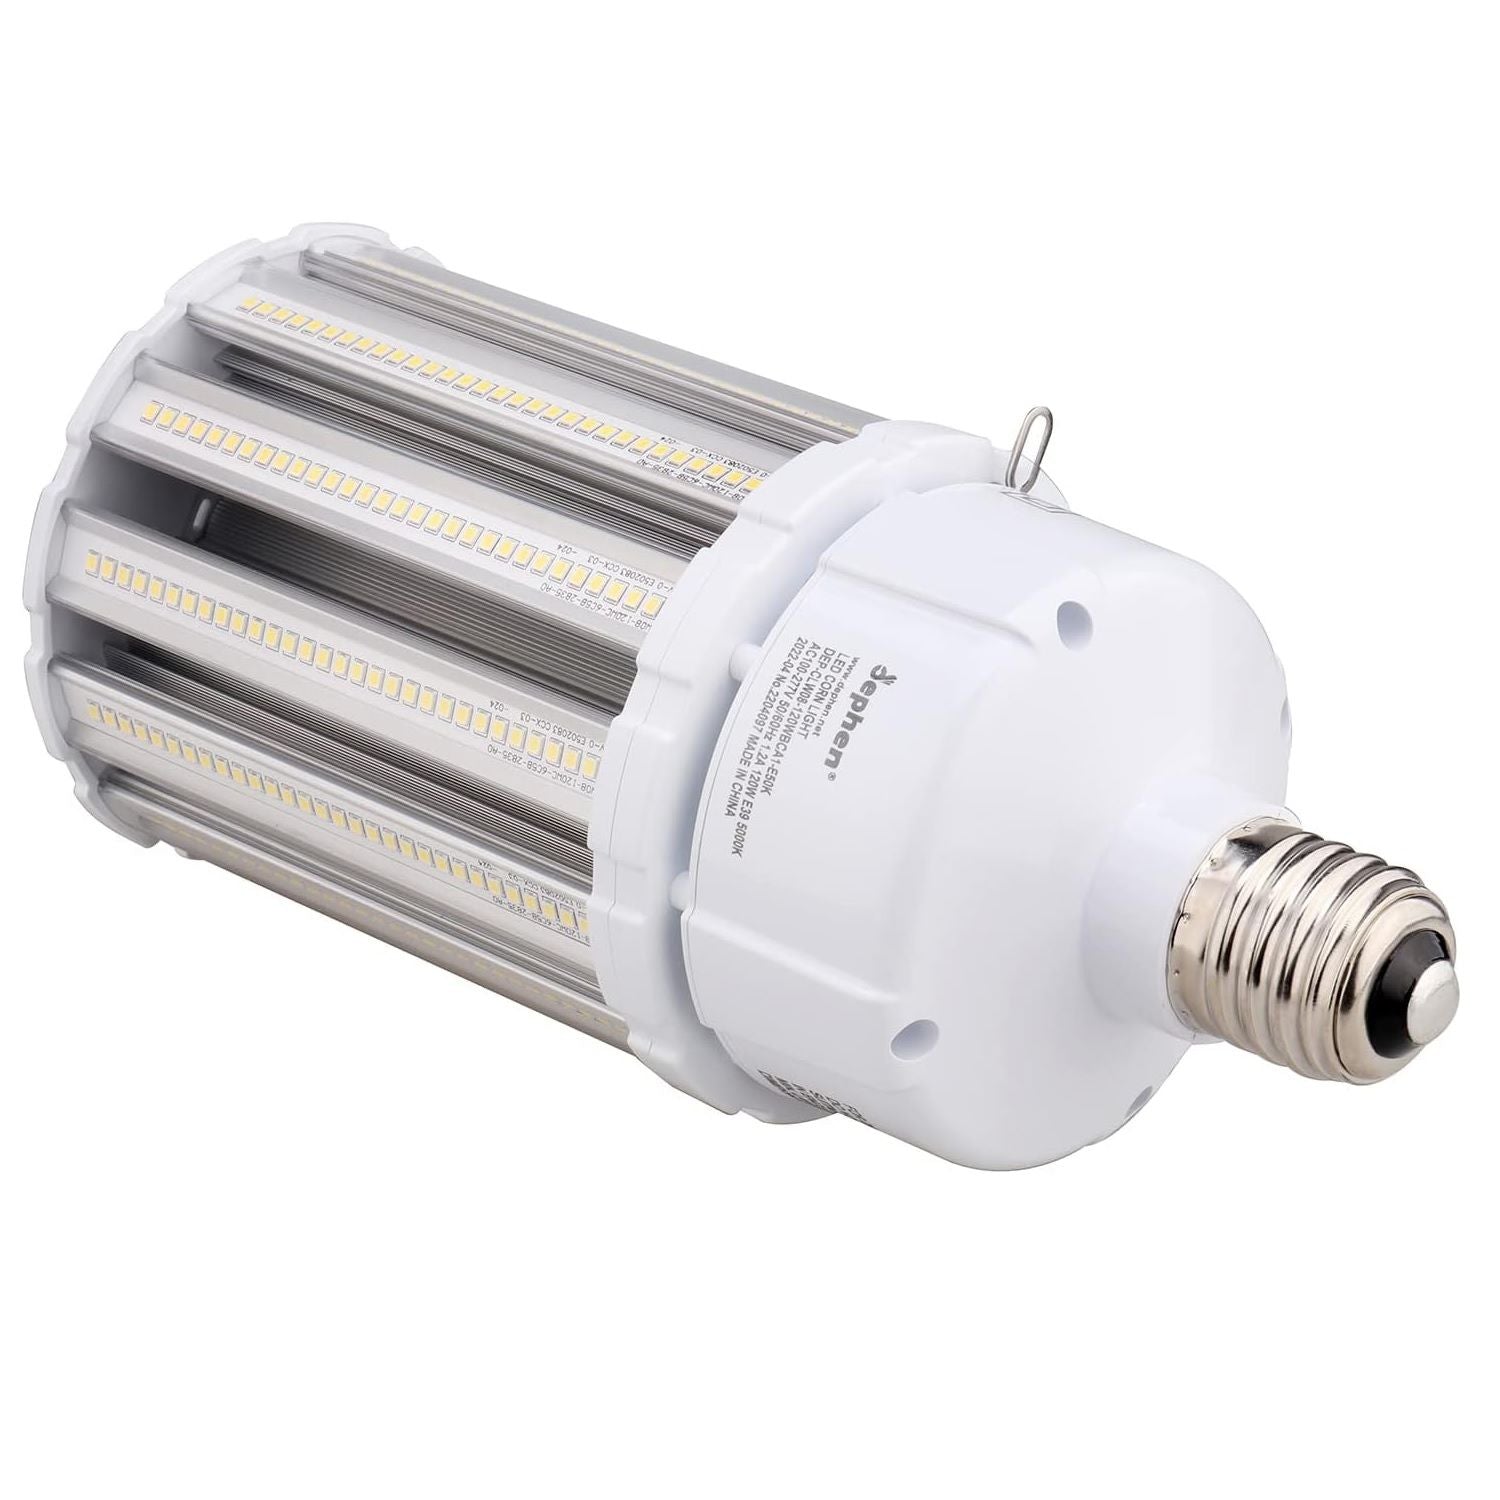 120W LED Corn Bulb-E39 Mogul Base, 18600Lm 5000K, 900W MH/HID/CFL/HPS Equivalent, UL-Listed Dephen